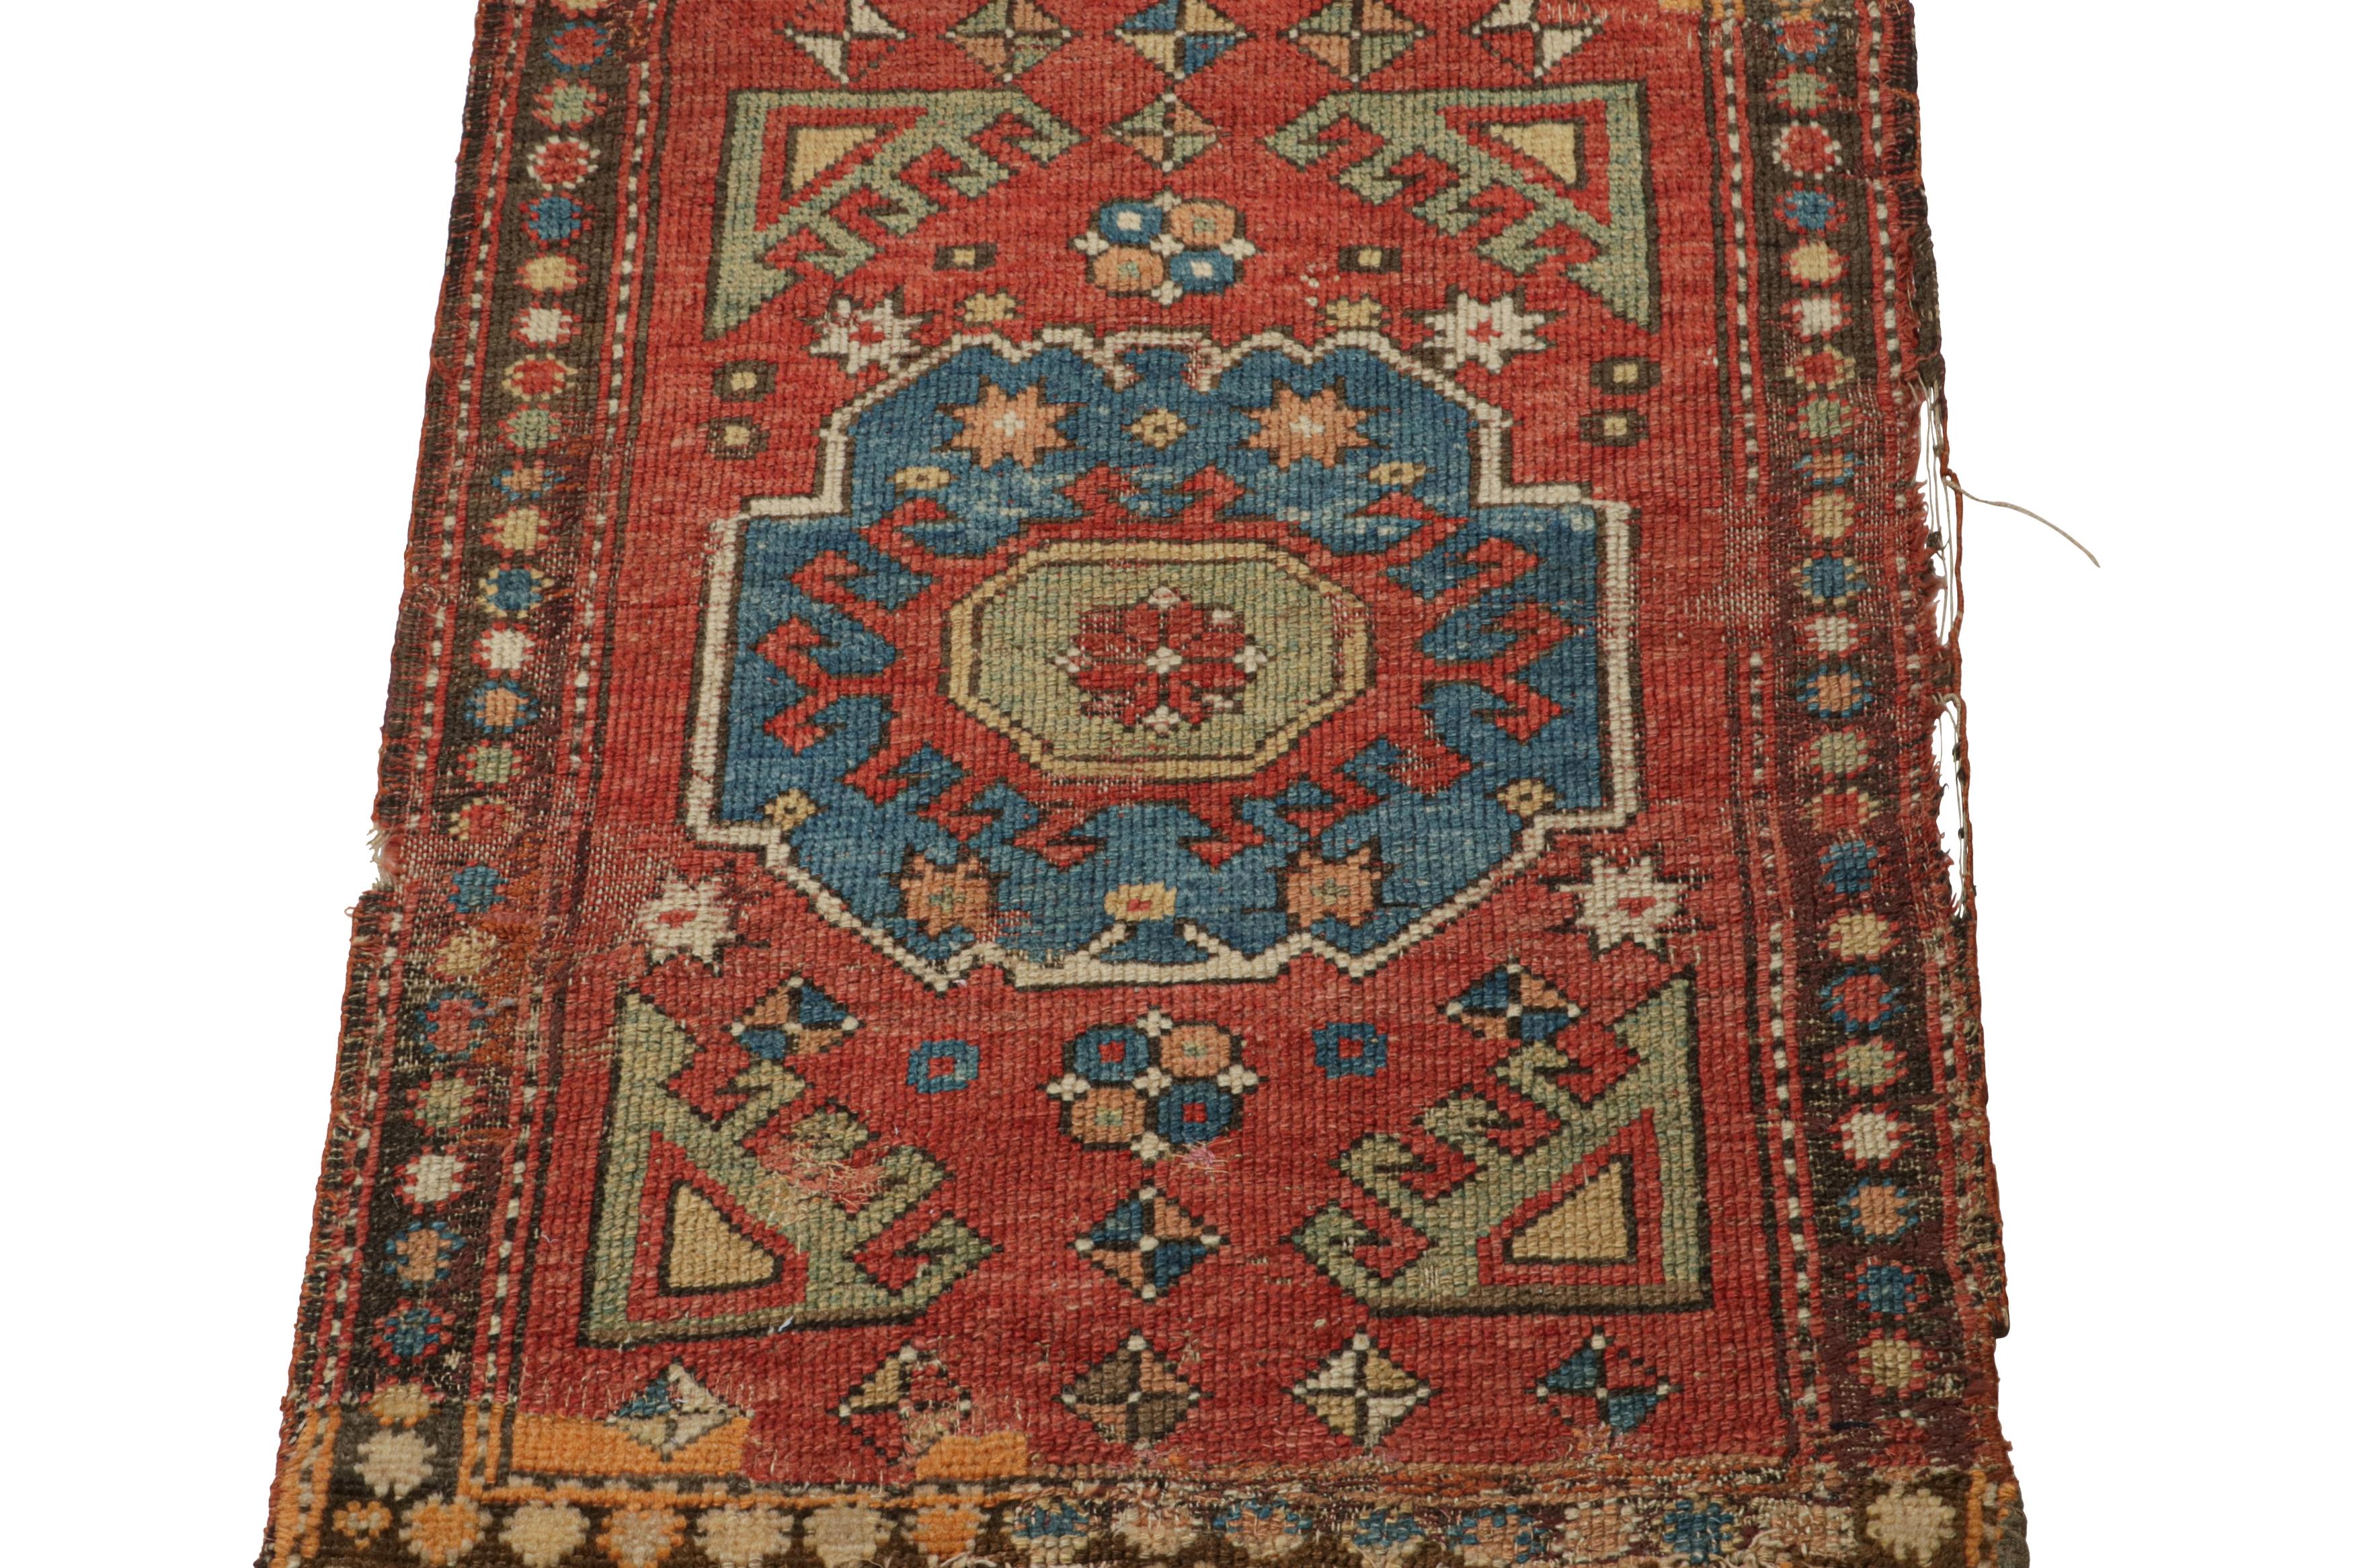 Dieser 2x3 große, handgeknüpfte Wollteppich (ca. 1910-1920) ist ein antiker Bergama-Teppich, der aus der gleichnamigen Stammesweberei in der Türkei nahe der Ägäis stammt.

Über das Design:

Dieses Stück in Geschenkgröße erfreut sich großer